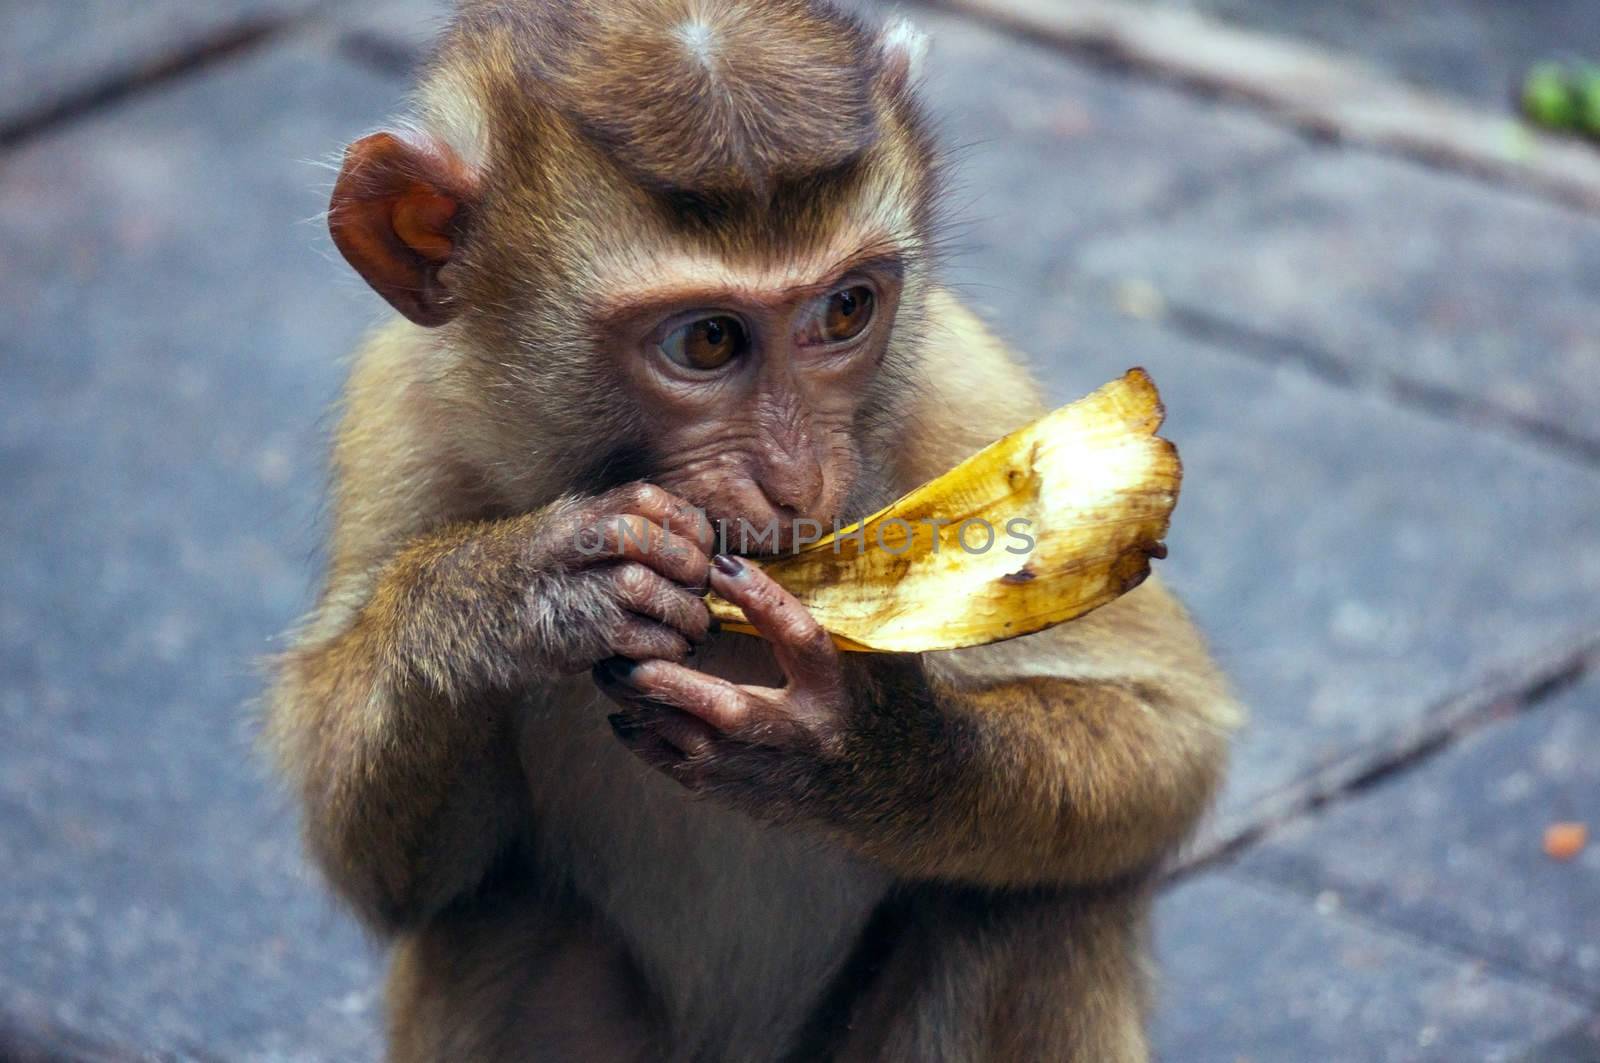 Baby monkey eating banana by eltonmaxim